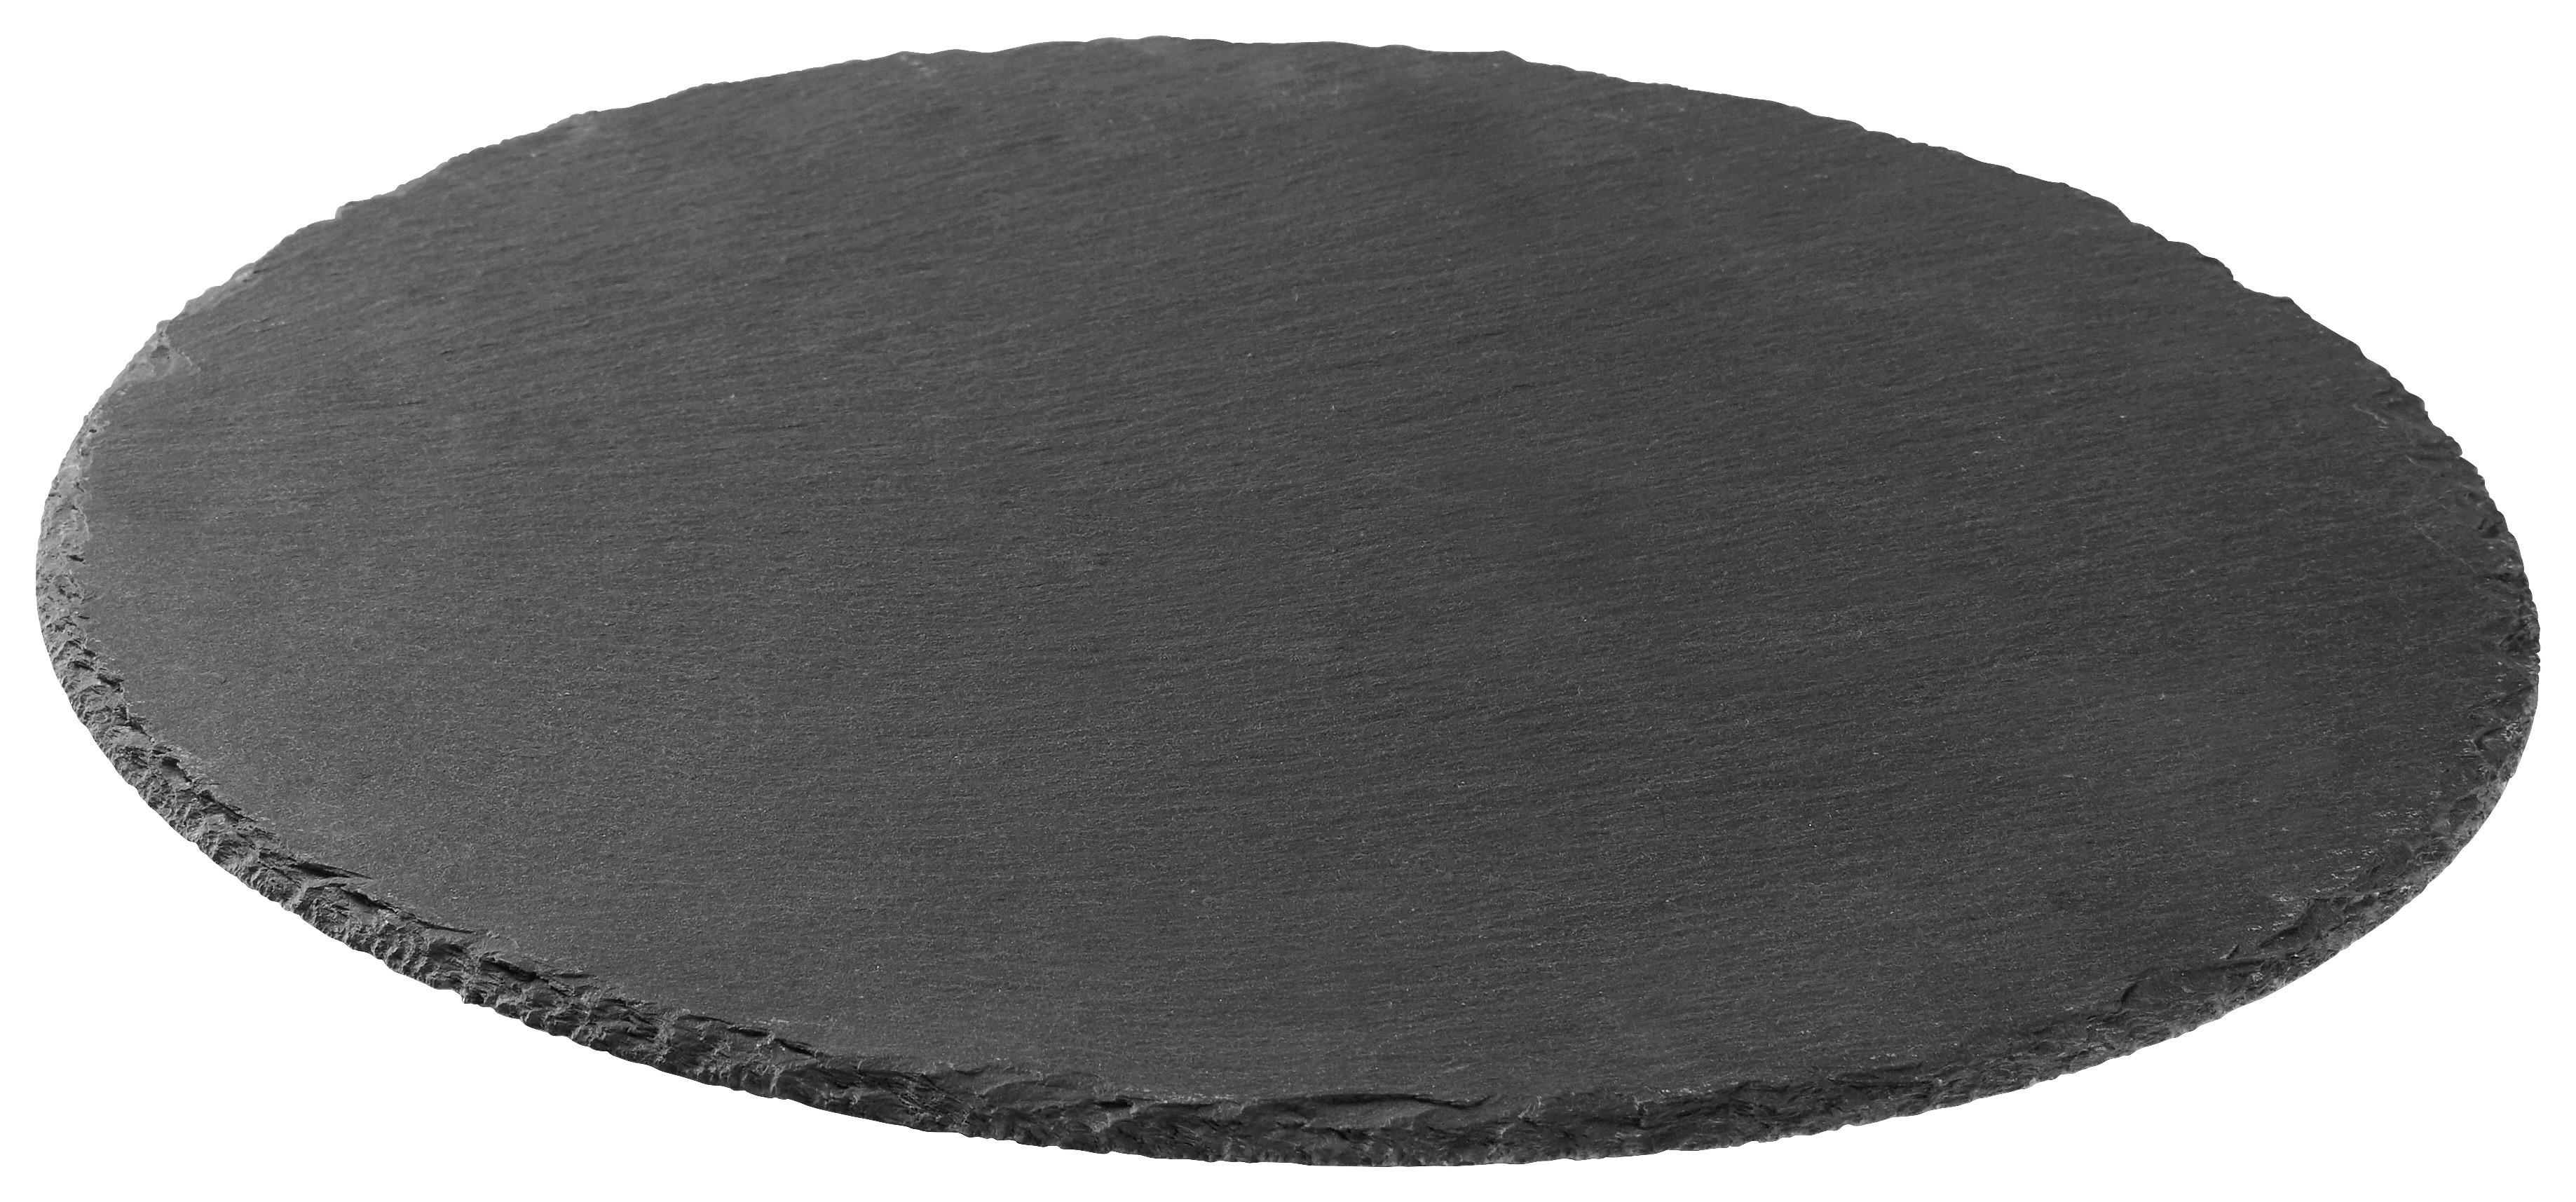 Servierplatte Stoney in Schwarz Ø ca. 40cm - Schwarz, MODERN, Kunststoff/Stein (40/0,7cm) - Zandiara